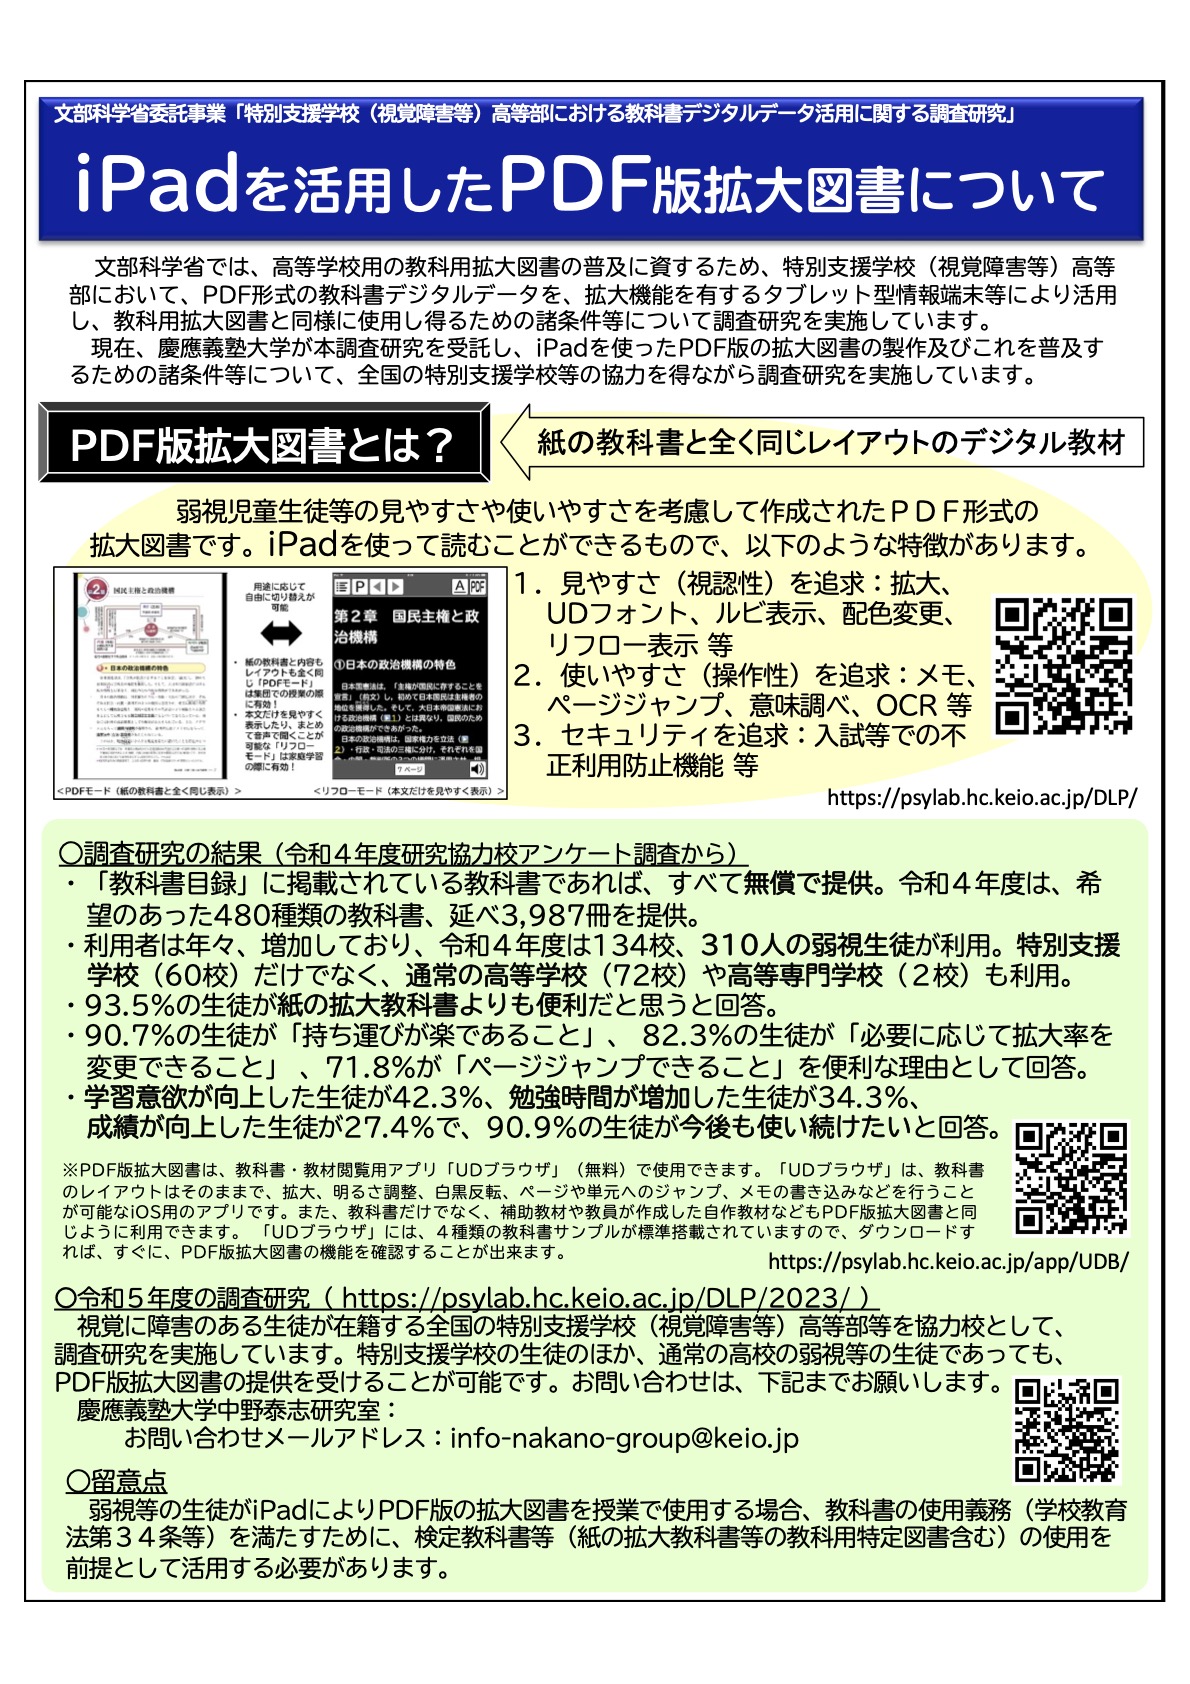 PDF版拡大図書のリーフレット